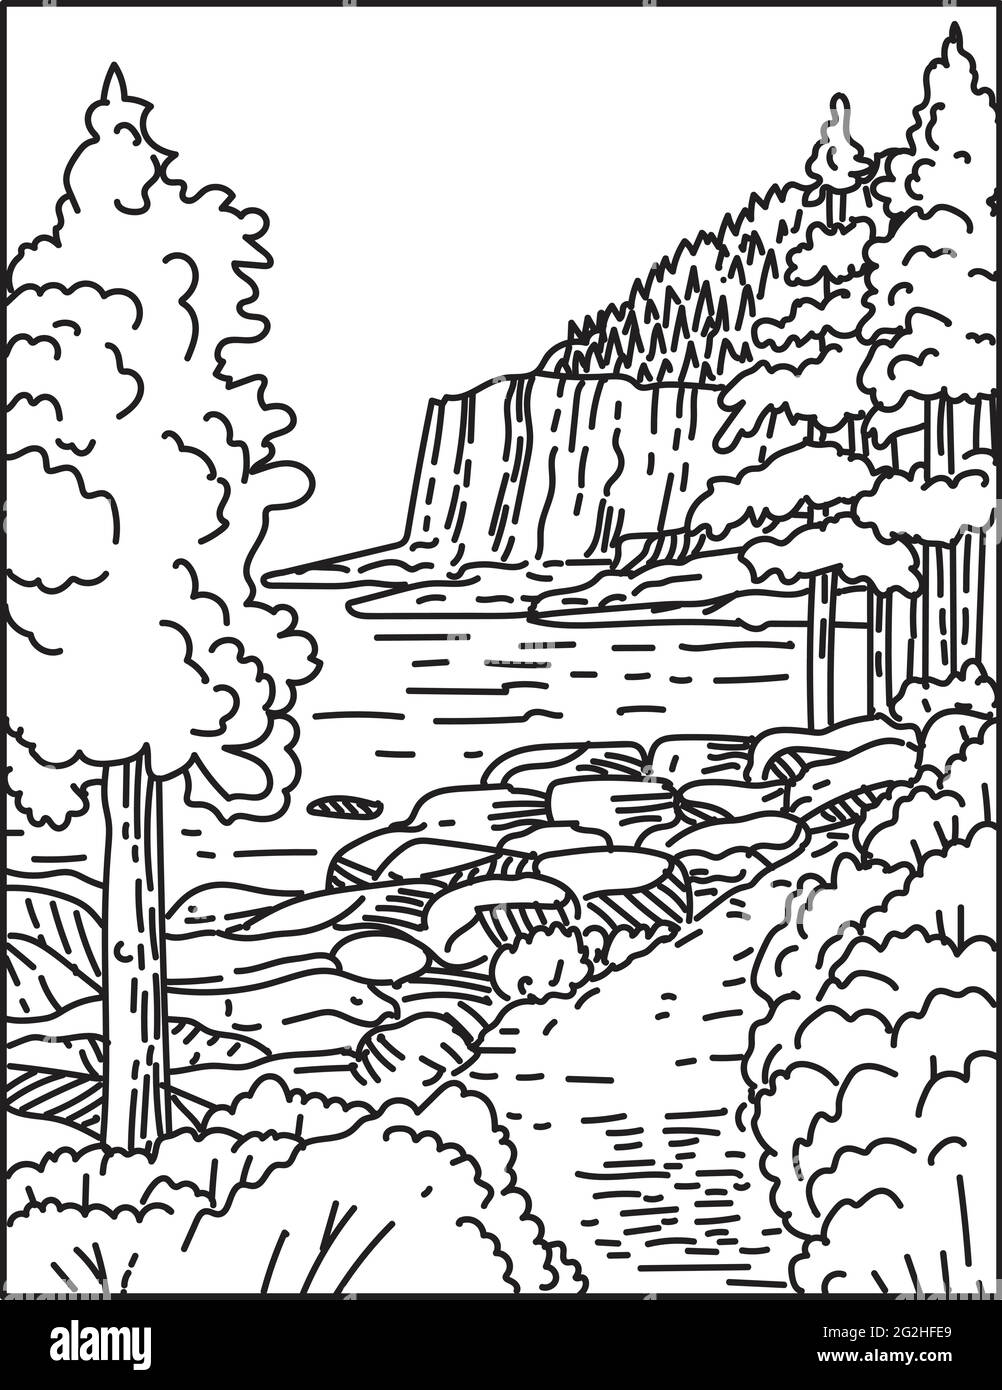 Illustrazione della linea monolinea di Otter Cliff lungo la costa atlantica del nord situata nel Maine del parco nazionale di Acadia, Stati Uniti d'America fatto in retro Illustrazione Vettoriale